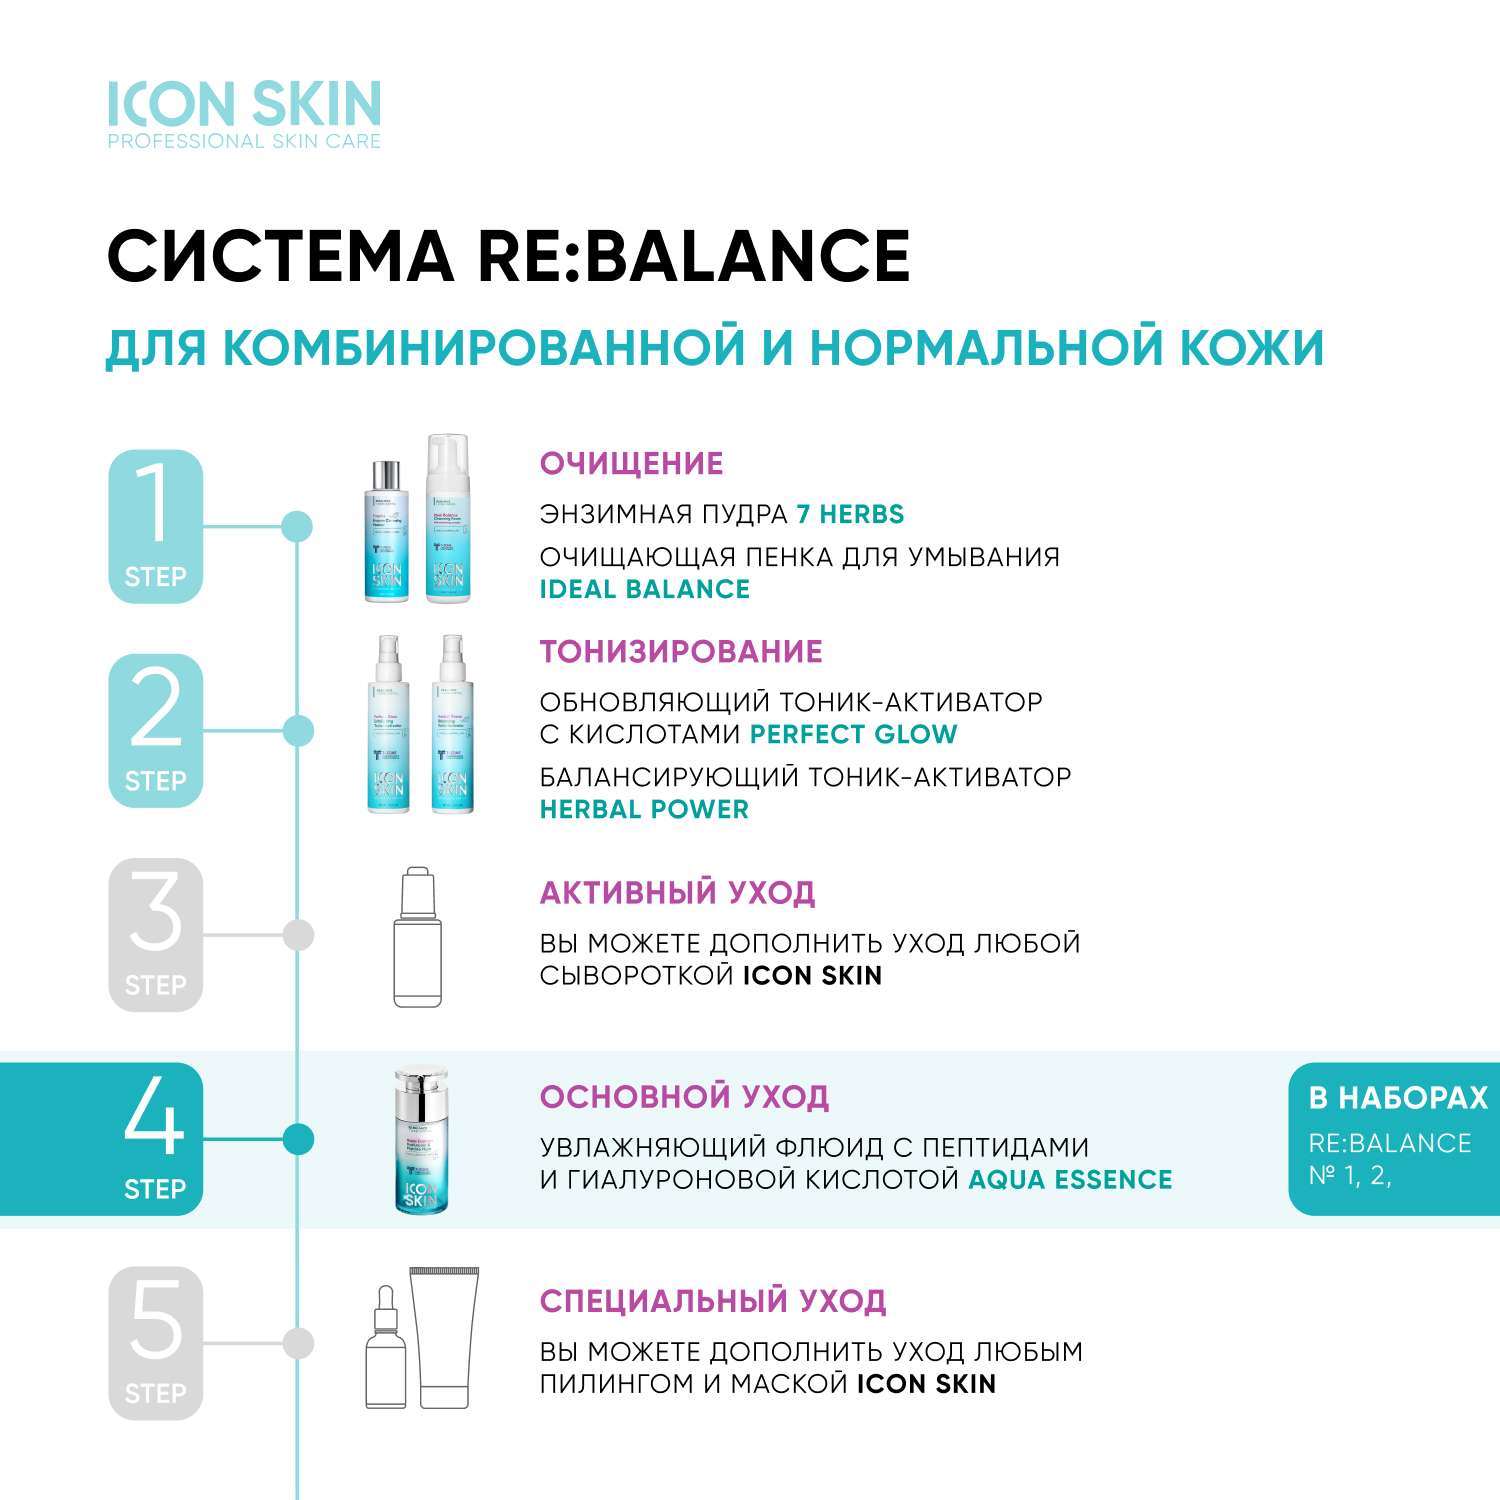 Крем ICON SKIN Aqua Essence увлажняющий с пептидами и гиалуроновой кислотой - фото 8